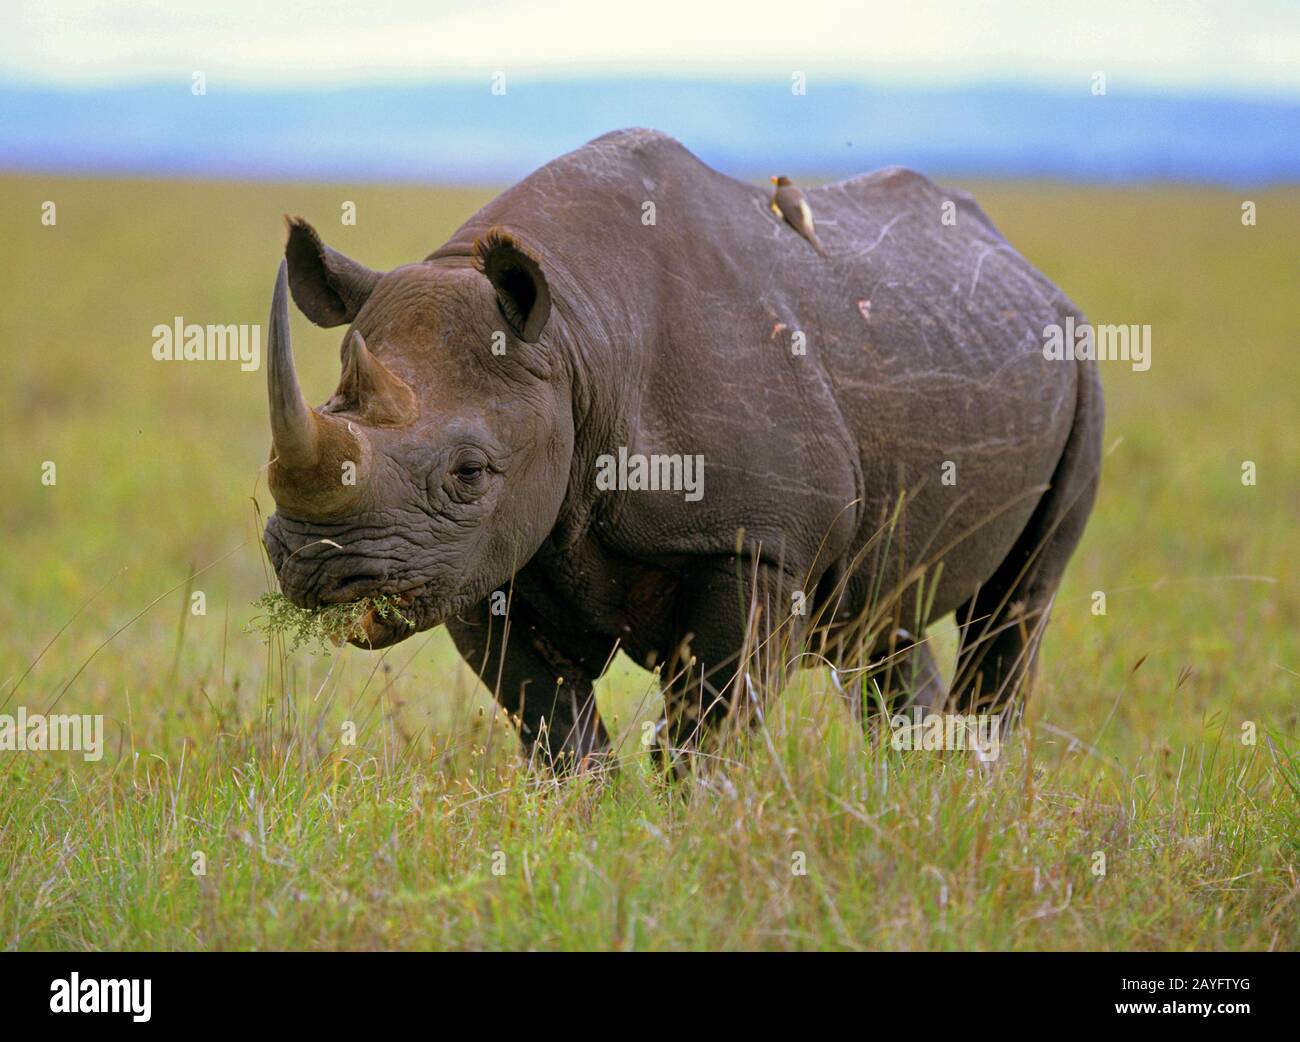 Rinocerontes negros, rinocerontes enganchados, hojear rinocerontes (Diceros bicornis), se encuentra comiendo en la sabana, África Foto de stock